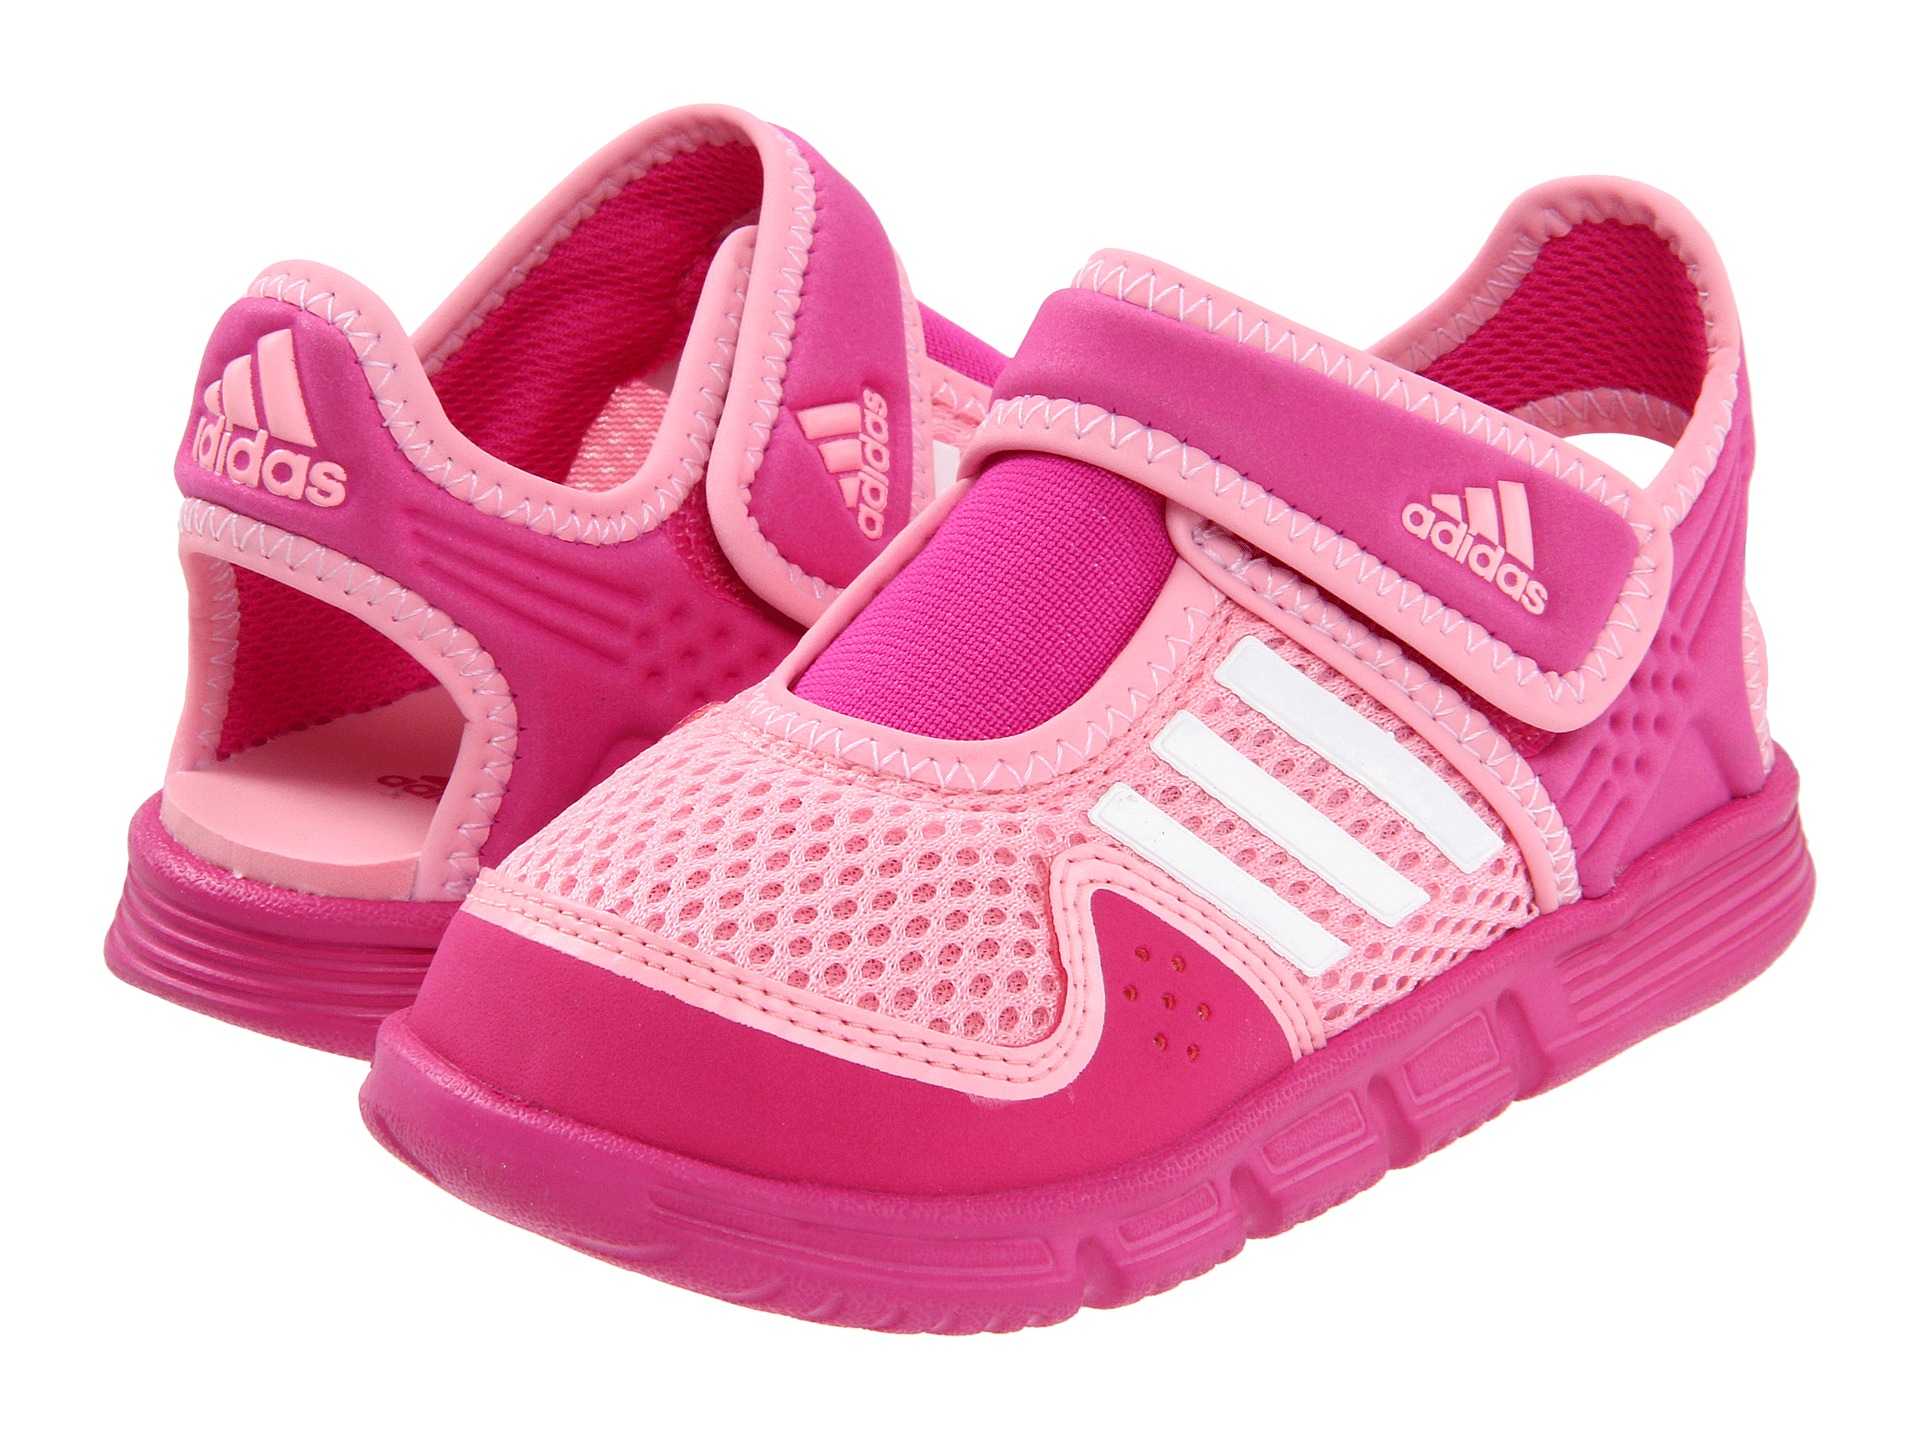 adidas Kids   Akwah Shoe I (Infant/Toddler)